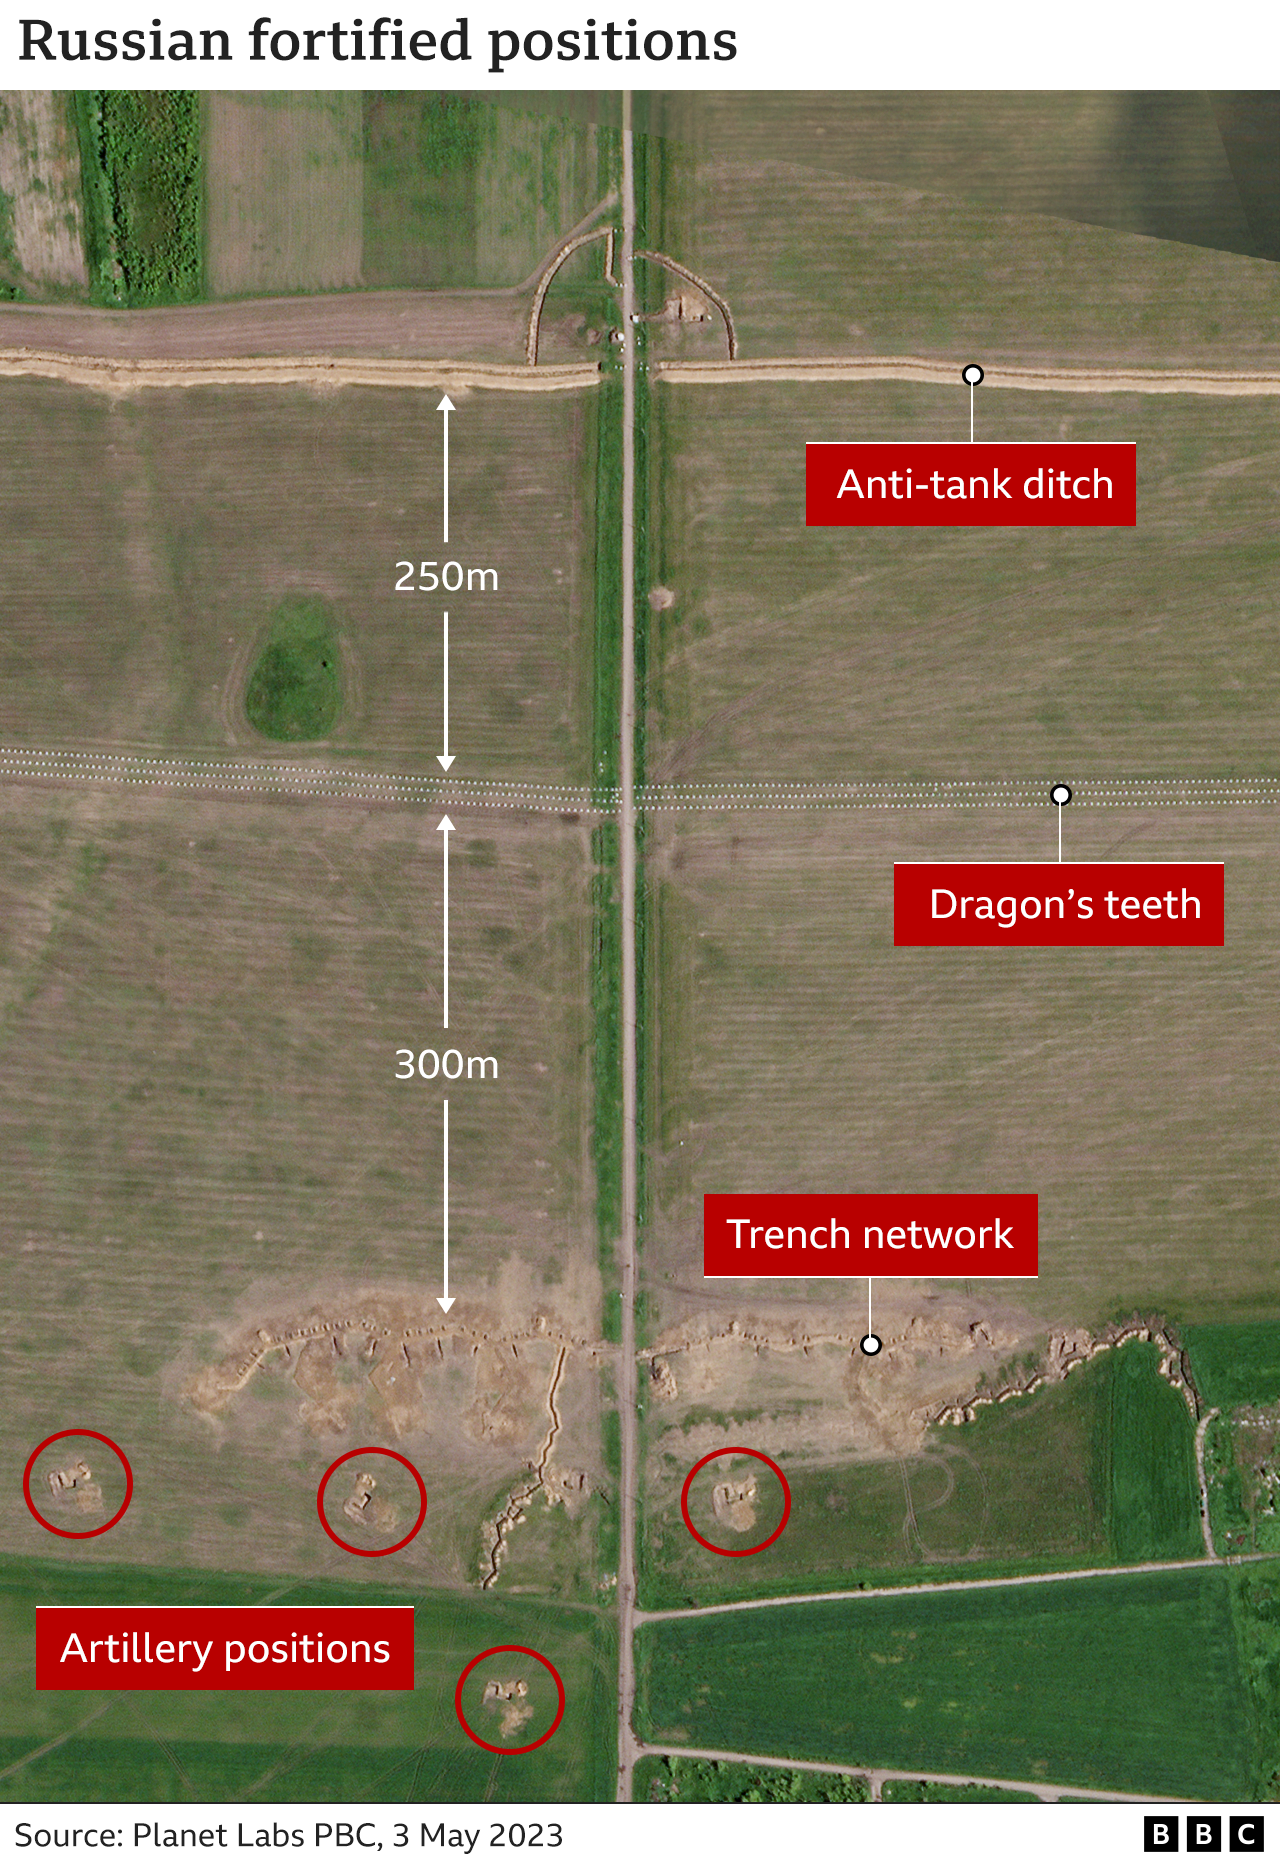 Δορυφορική εικόνα που δείχνει μια αντιαρματική τάφρο, ακολουθούμενη από μια σειρά από «δόντια του δράκου» σε απόσταση 250 μέτρων και ένα δίκτυο τάφρων 300 μέτρα πιο κάτω.  Πίσω από τα χαρακώματα σημειώνονται θέσεις πυροβολικού.